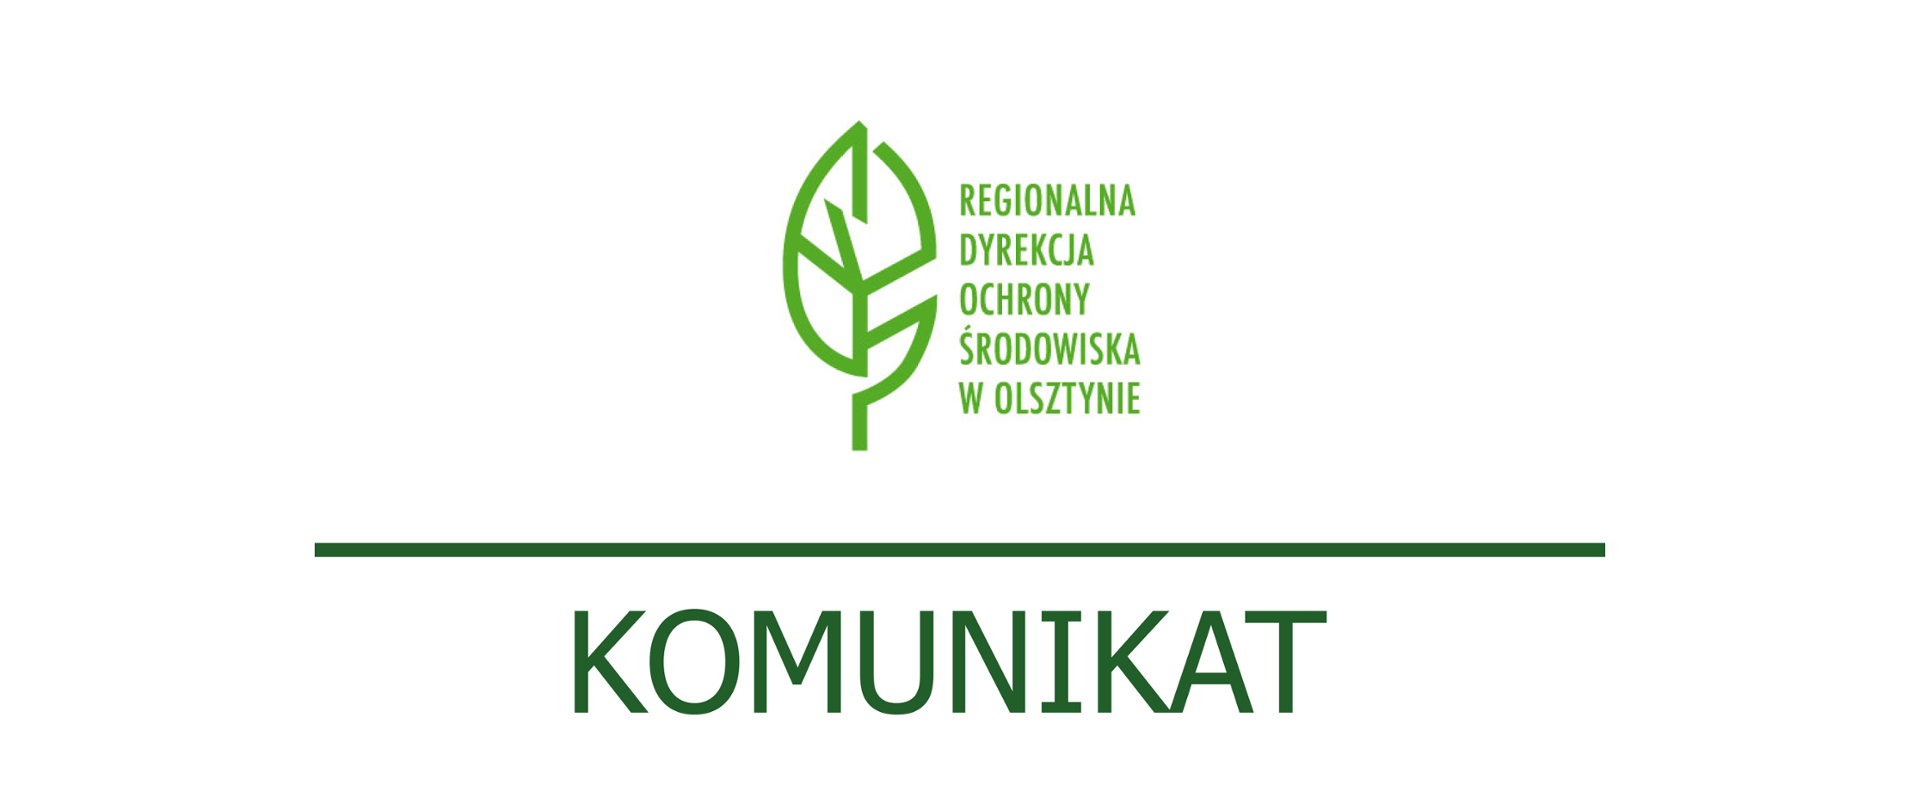 Zielone logo Regionalnej Dyrekcji Ochrony Środowiska w Olsztynie, pod nim zielony napis Komunikat